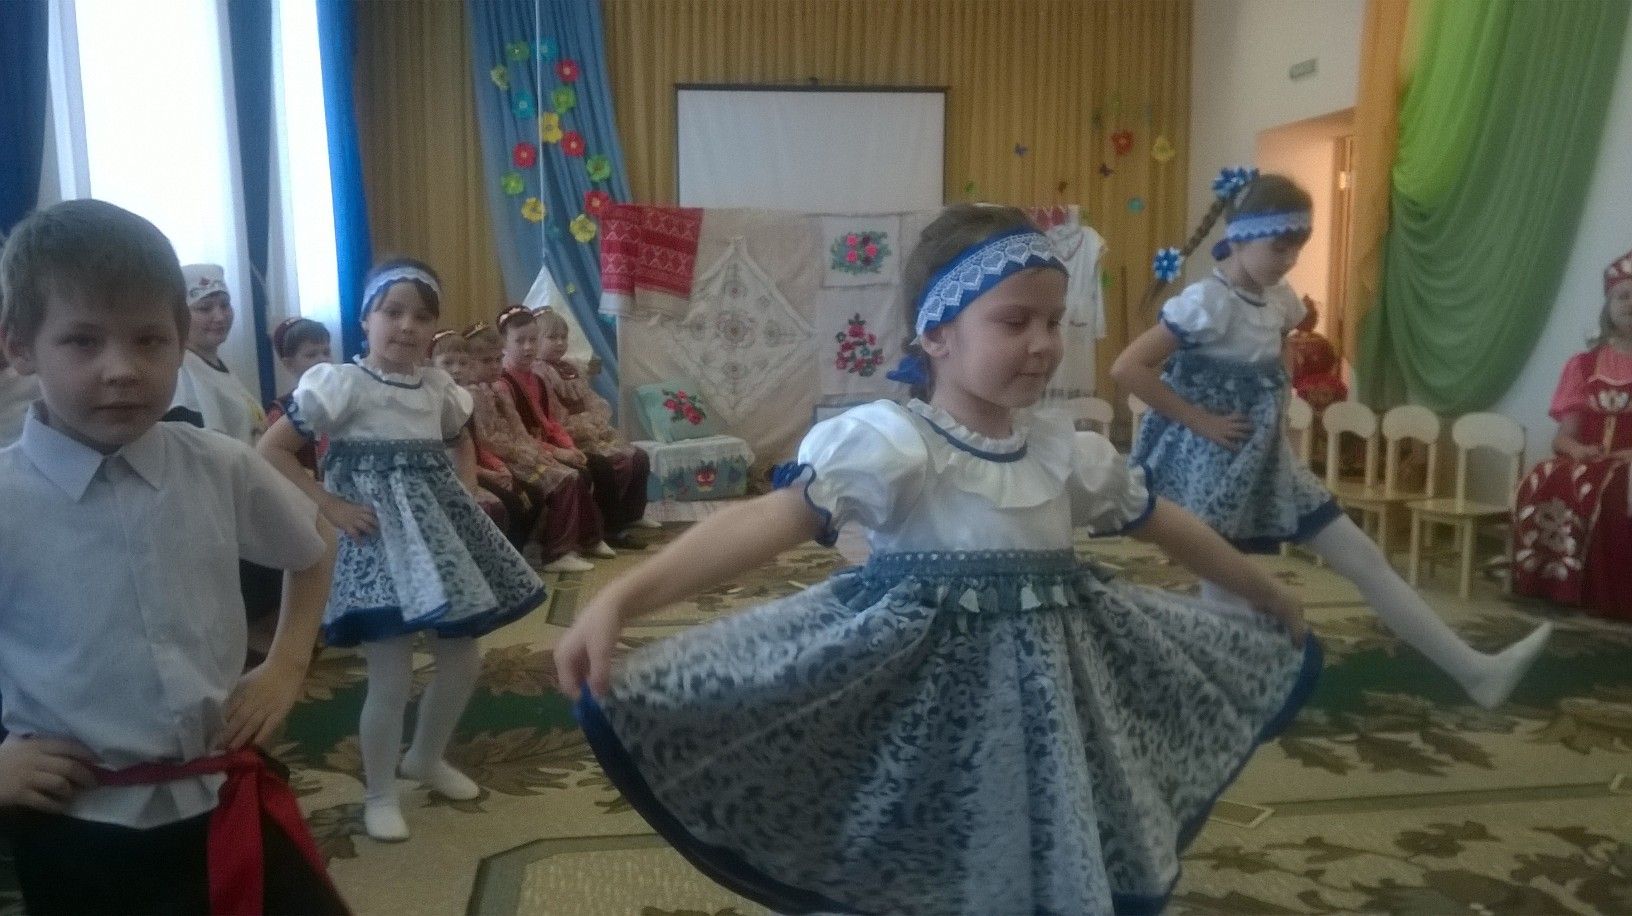 В Болгаре прошел семинар воспитателей и учителей по обучению татарскому языку (ФОТО)